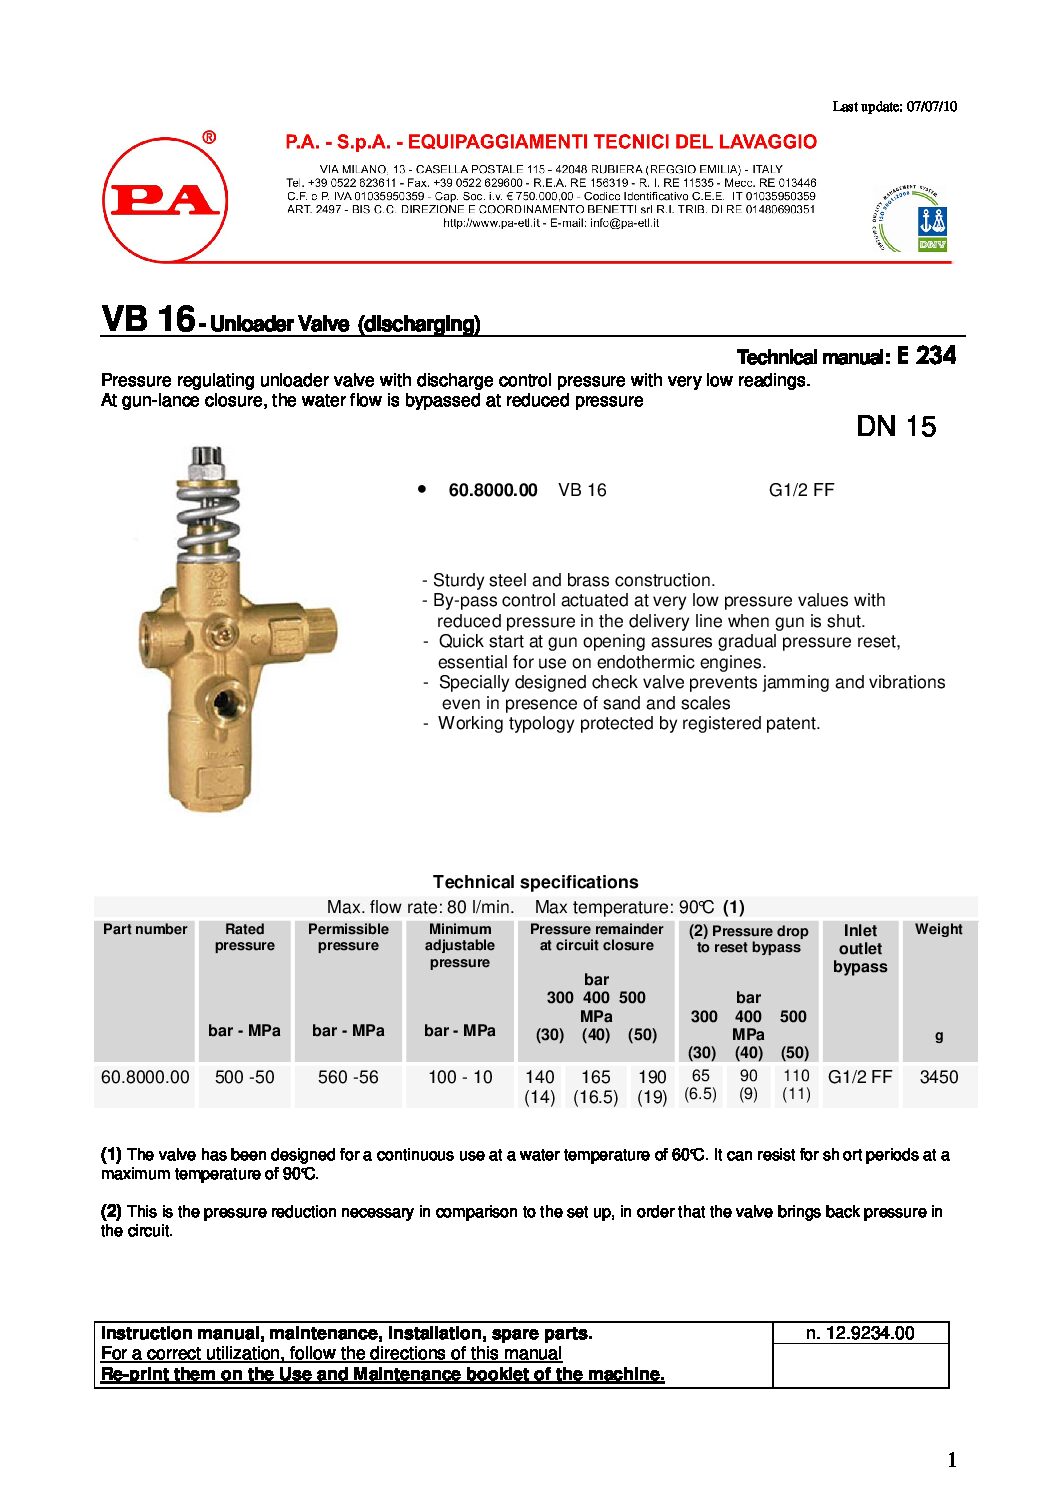 PA VB16 Unloader technical manual